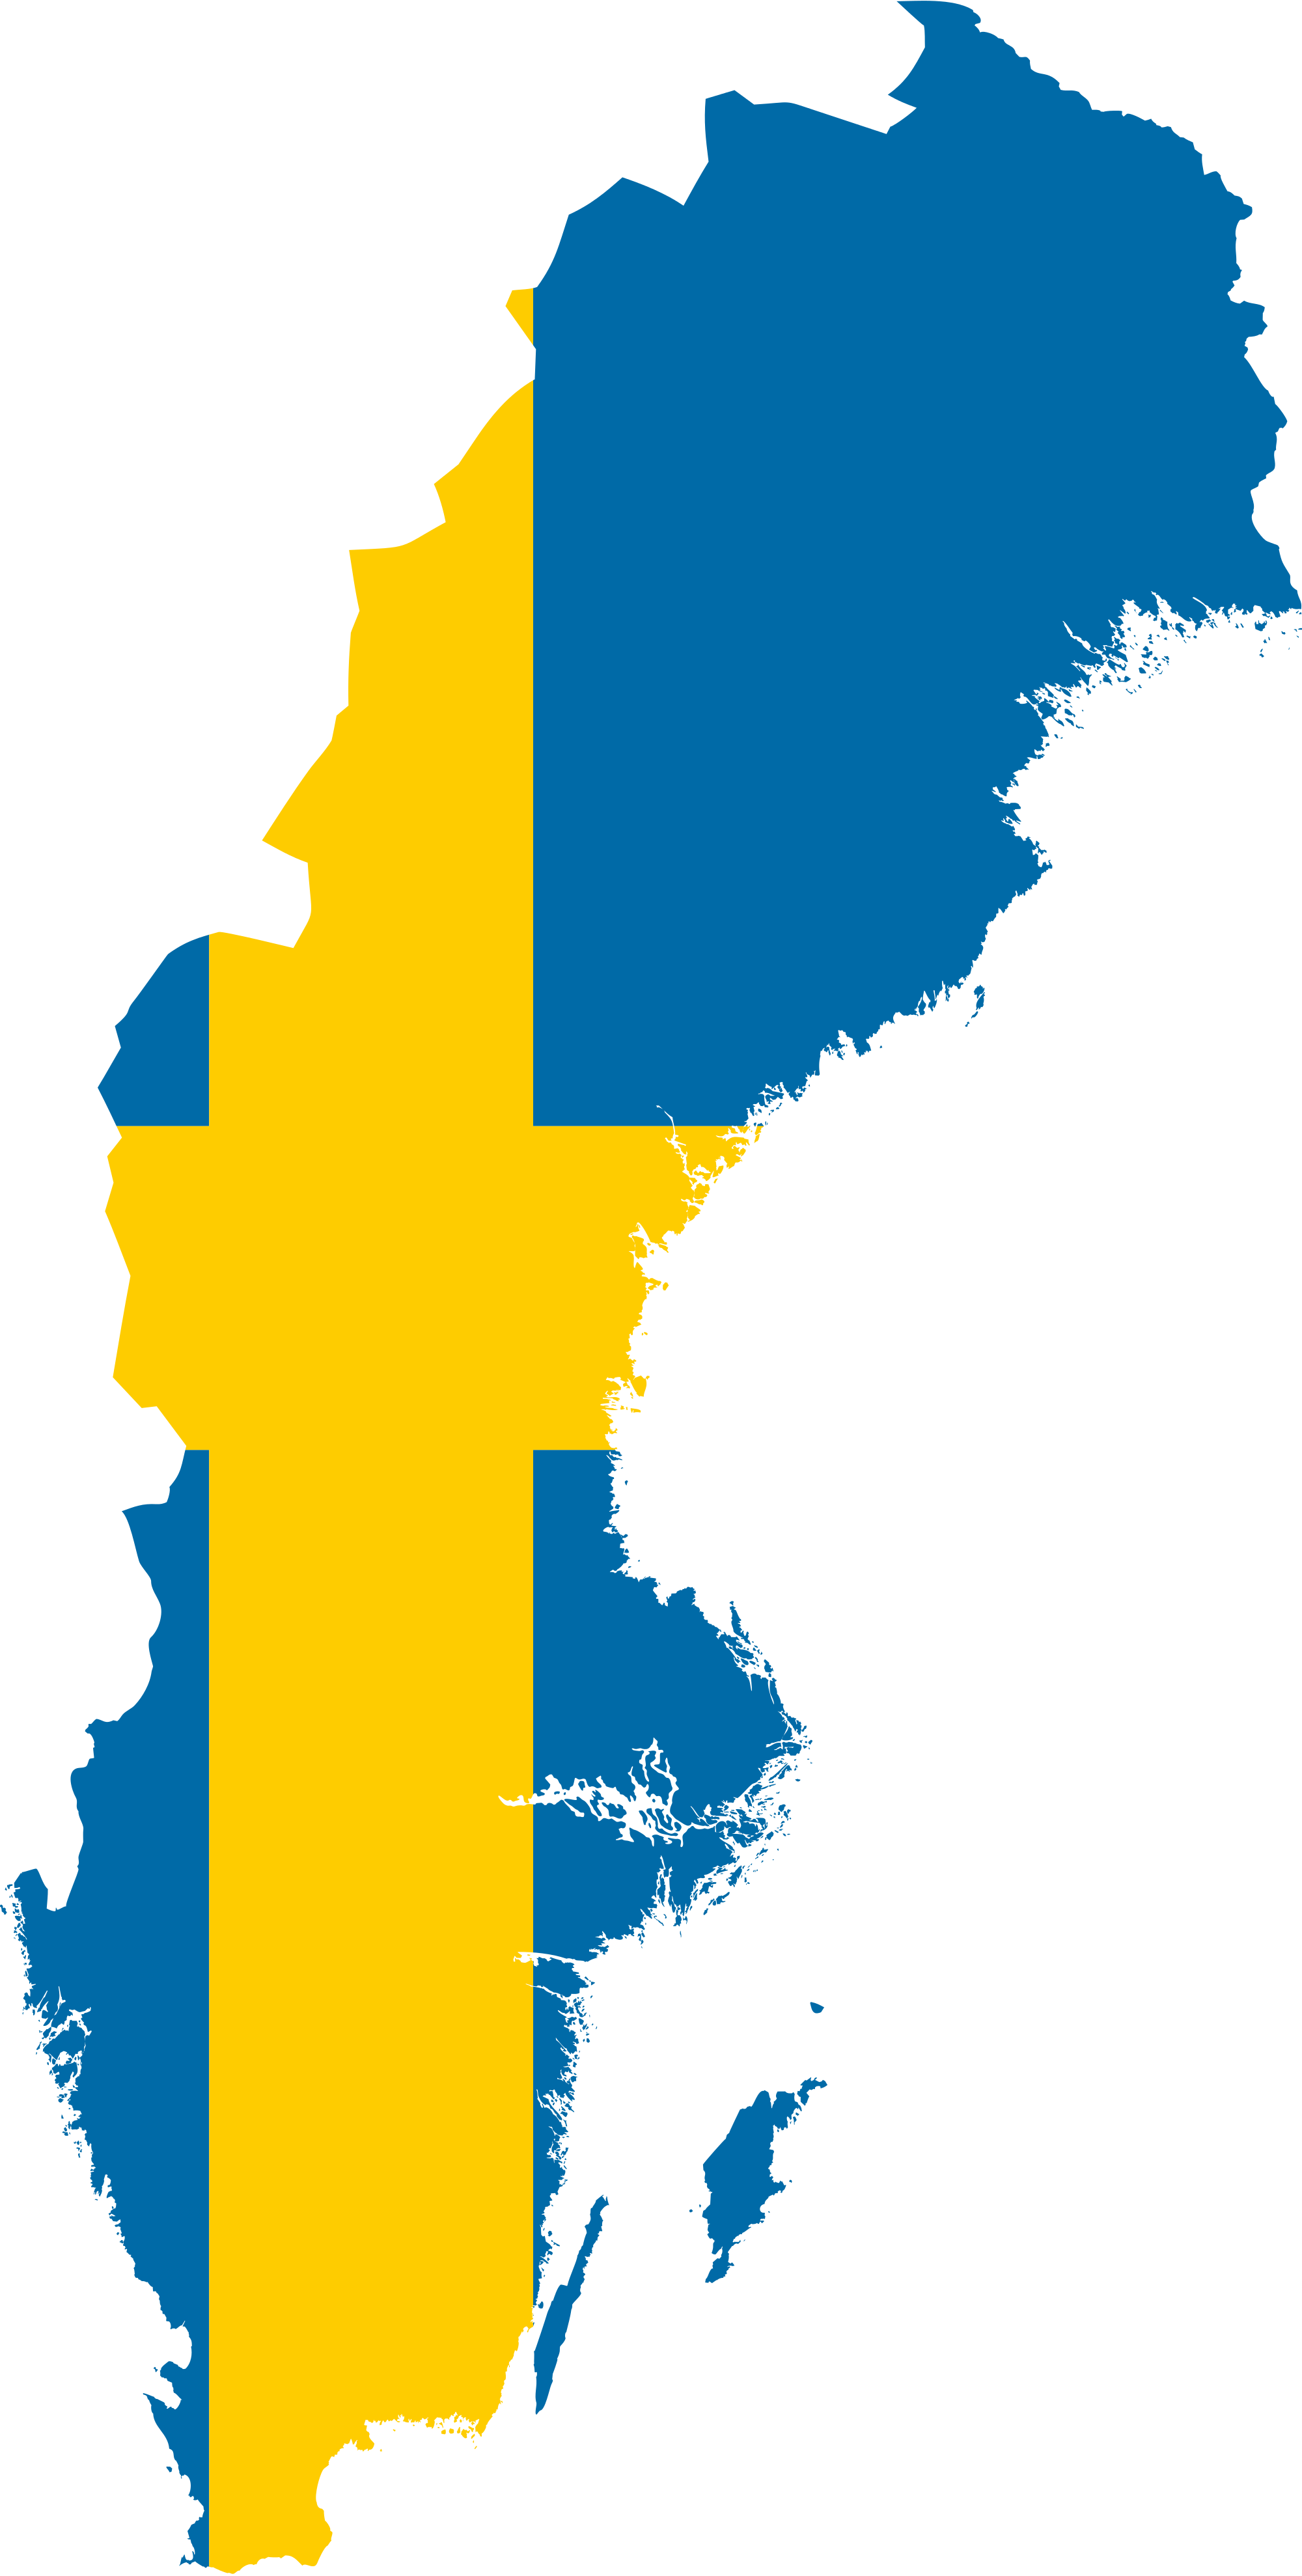 Map of Sweden - Dr. Odd